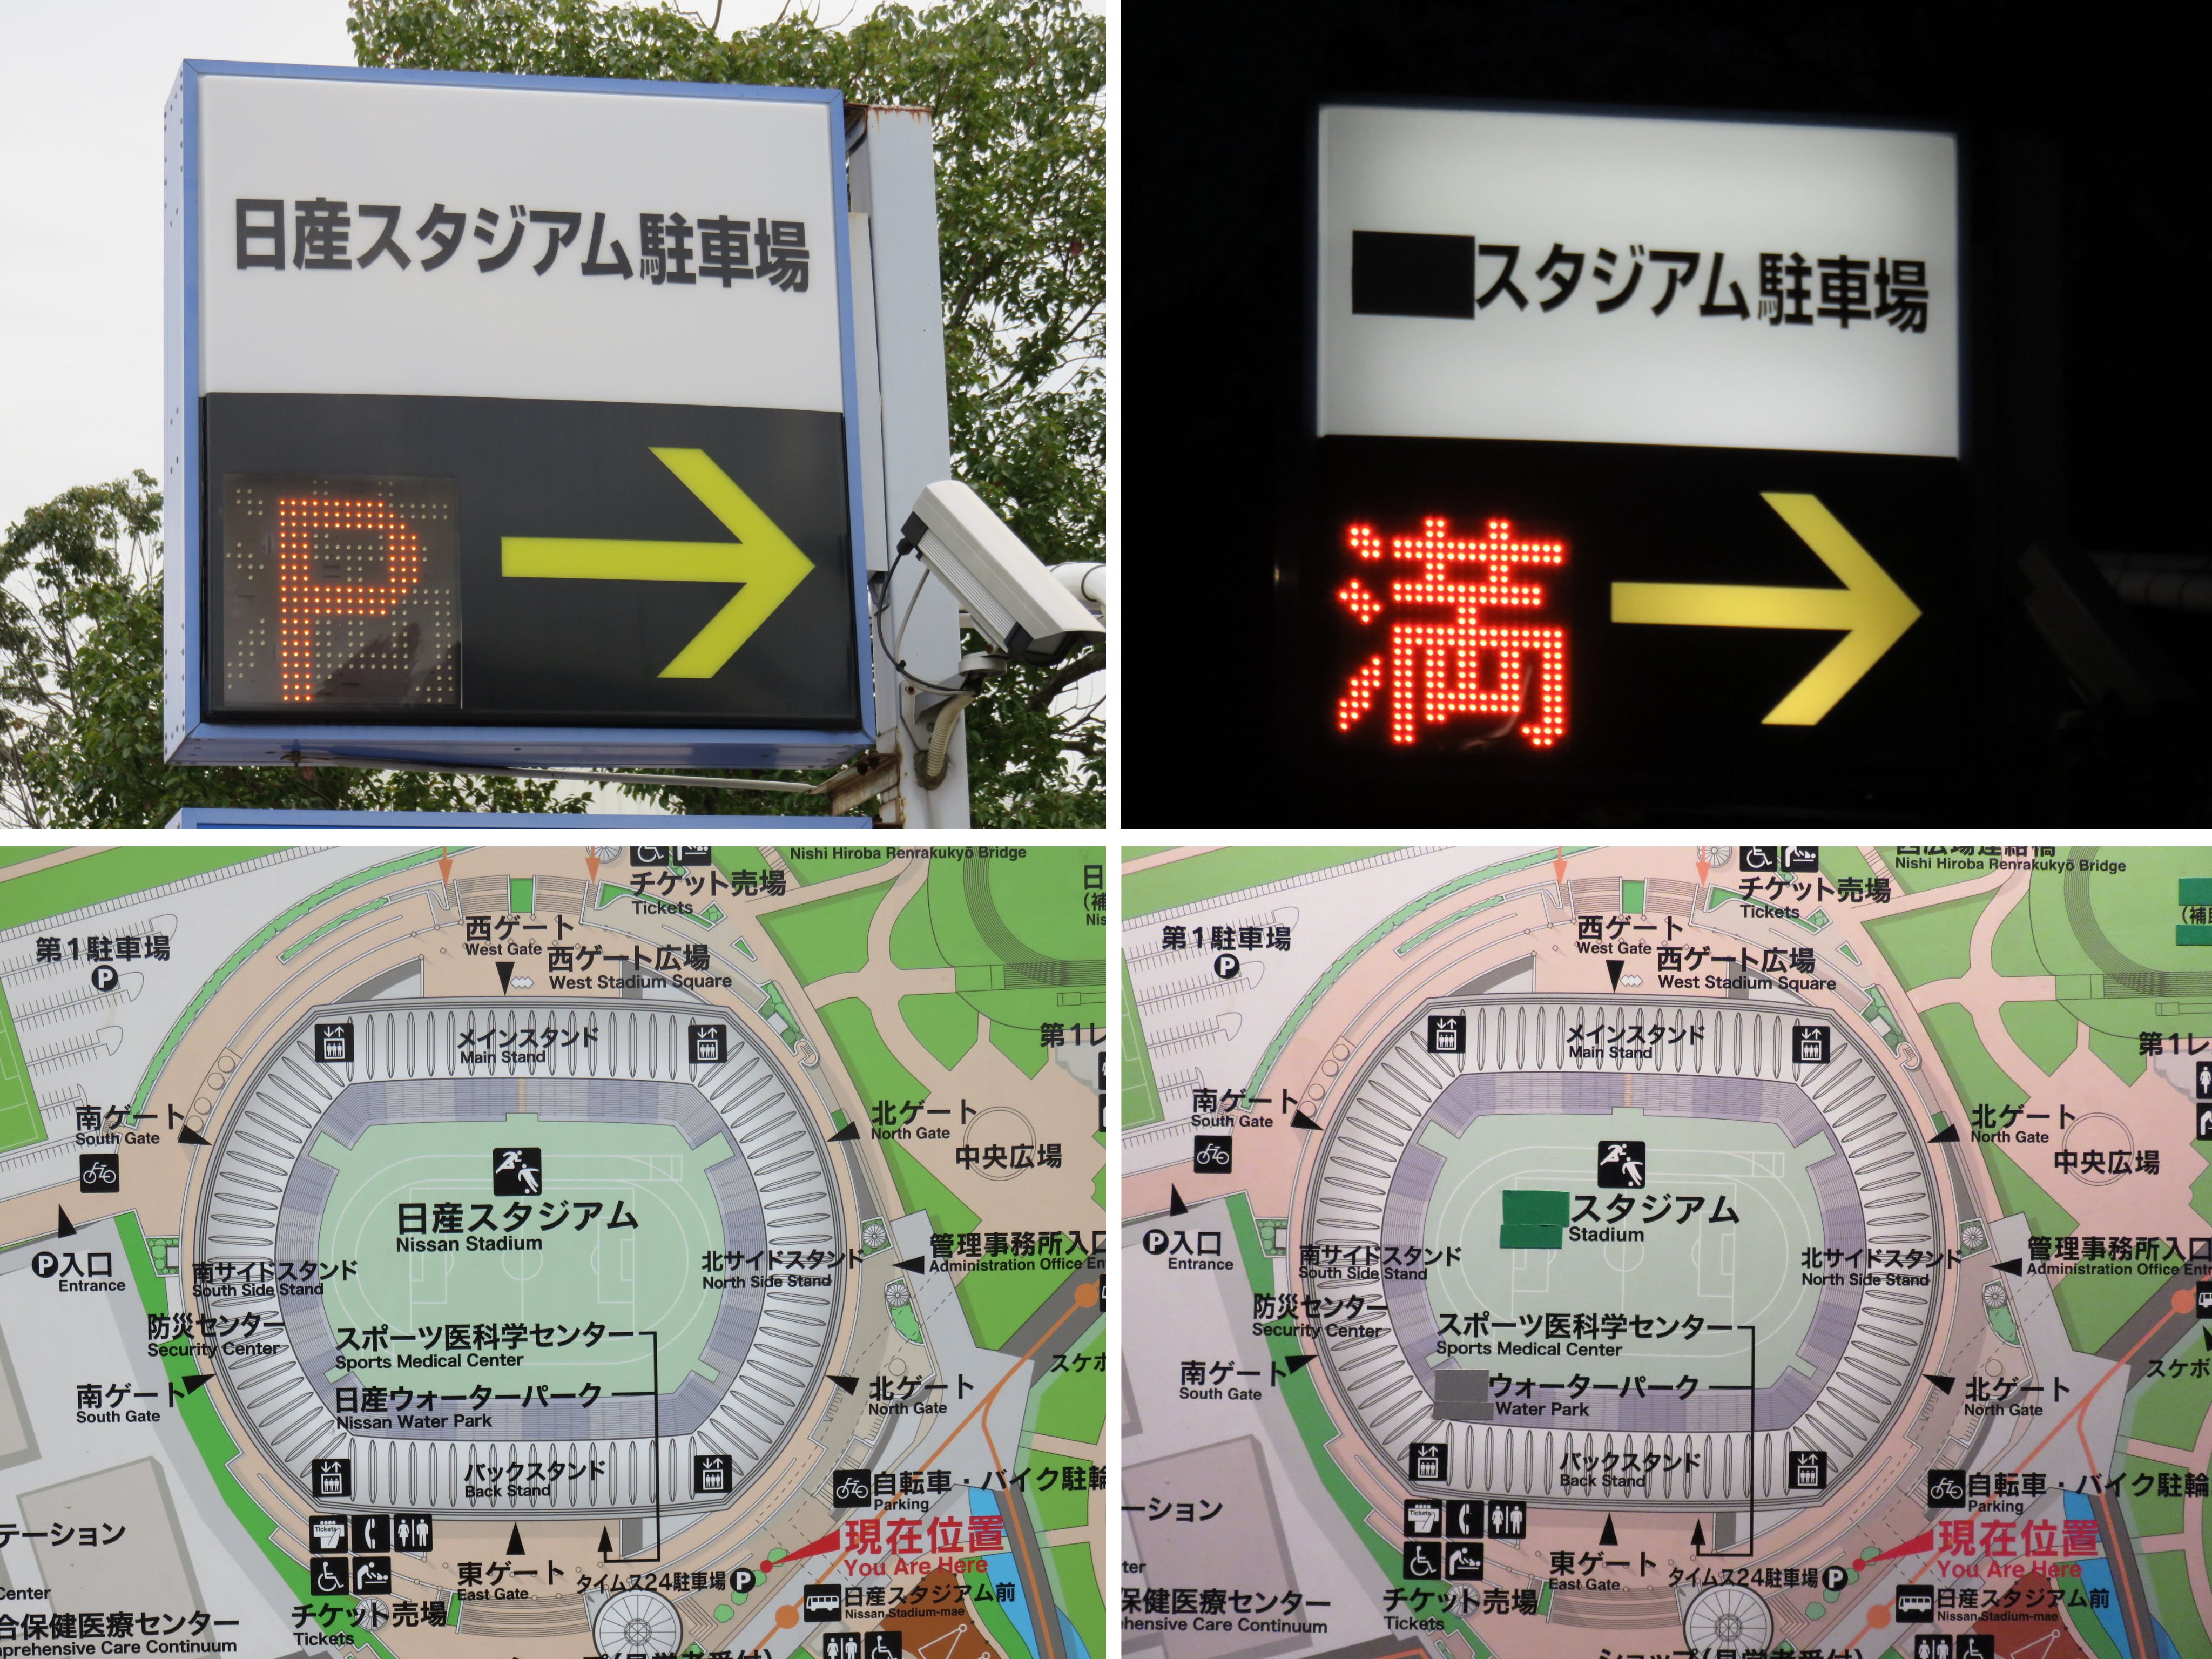 Yoshio Ichikawa ｆｉｆａクラブワールドカップ 12 18 Fifaの試合が行われる時 日産スタジアム のある新横浜公園から日産の文字がことごとく消えてしまう事を知っていますか 先月は消されていなかったが 02年の Fifaワールドカップの時は道路の案内